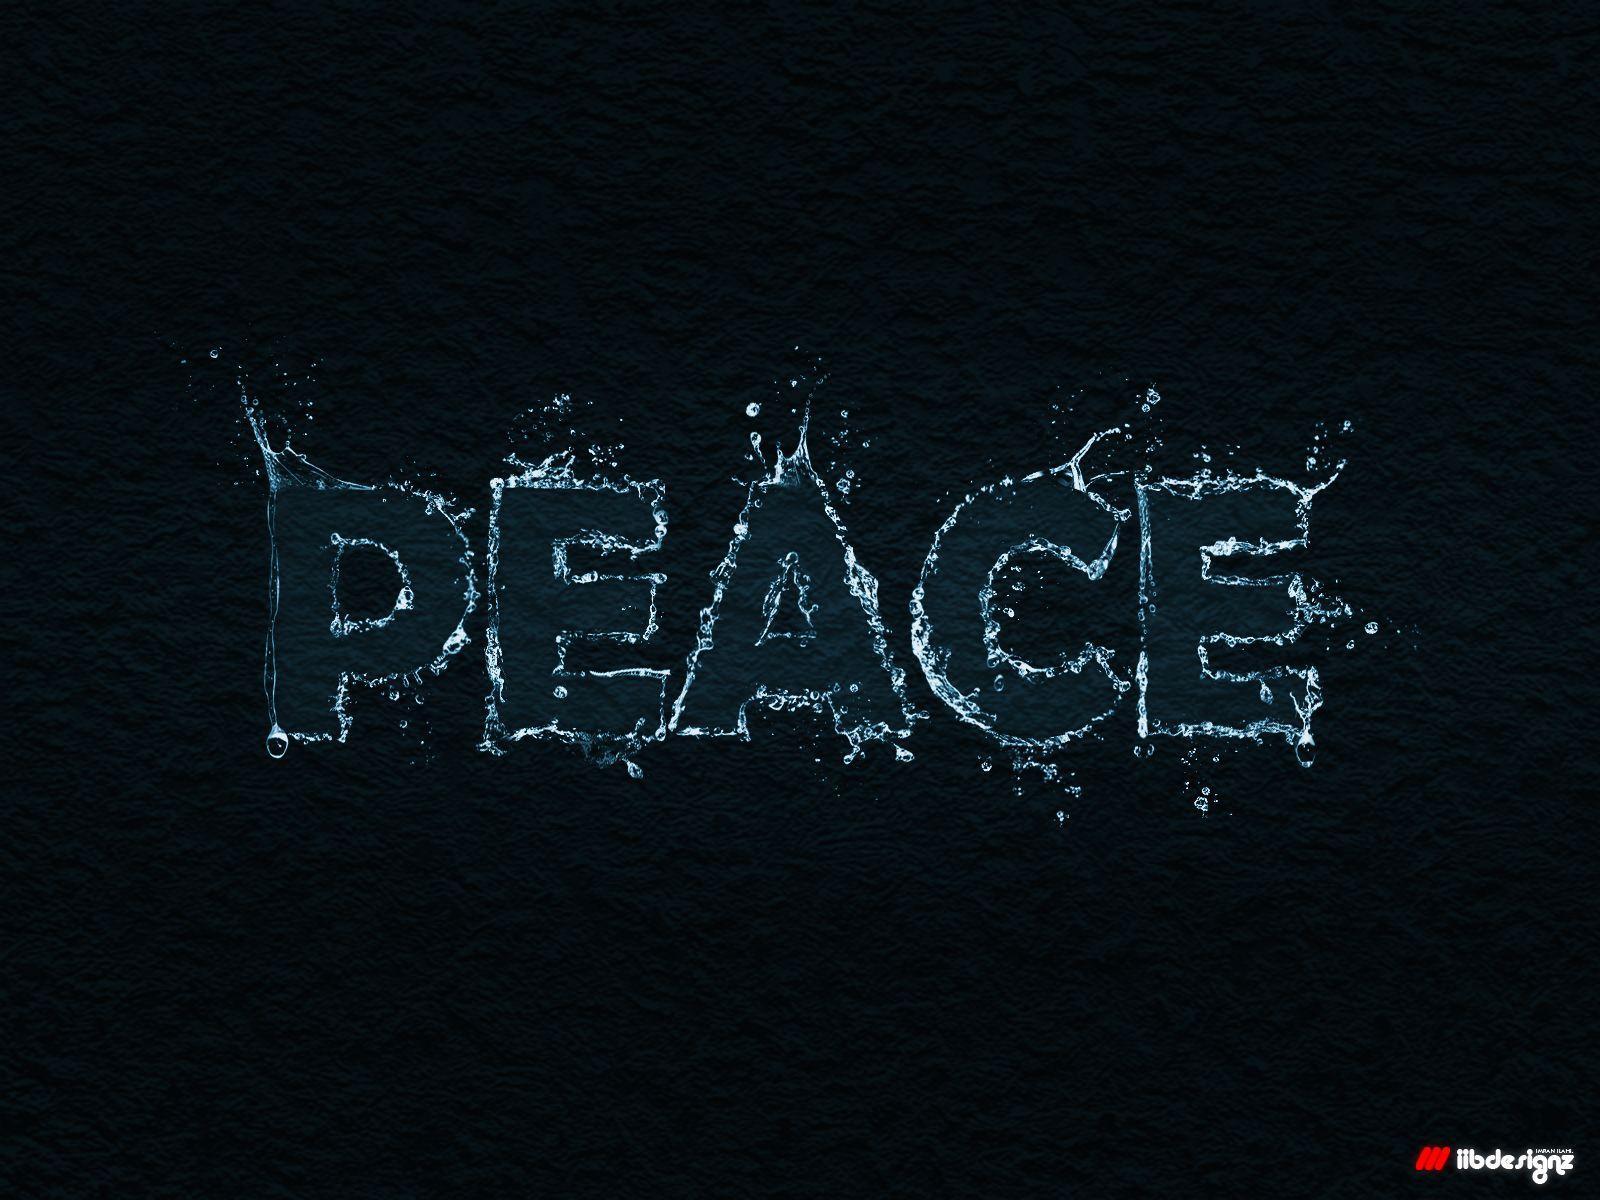 Peace wallpaper. Peace